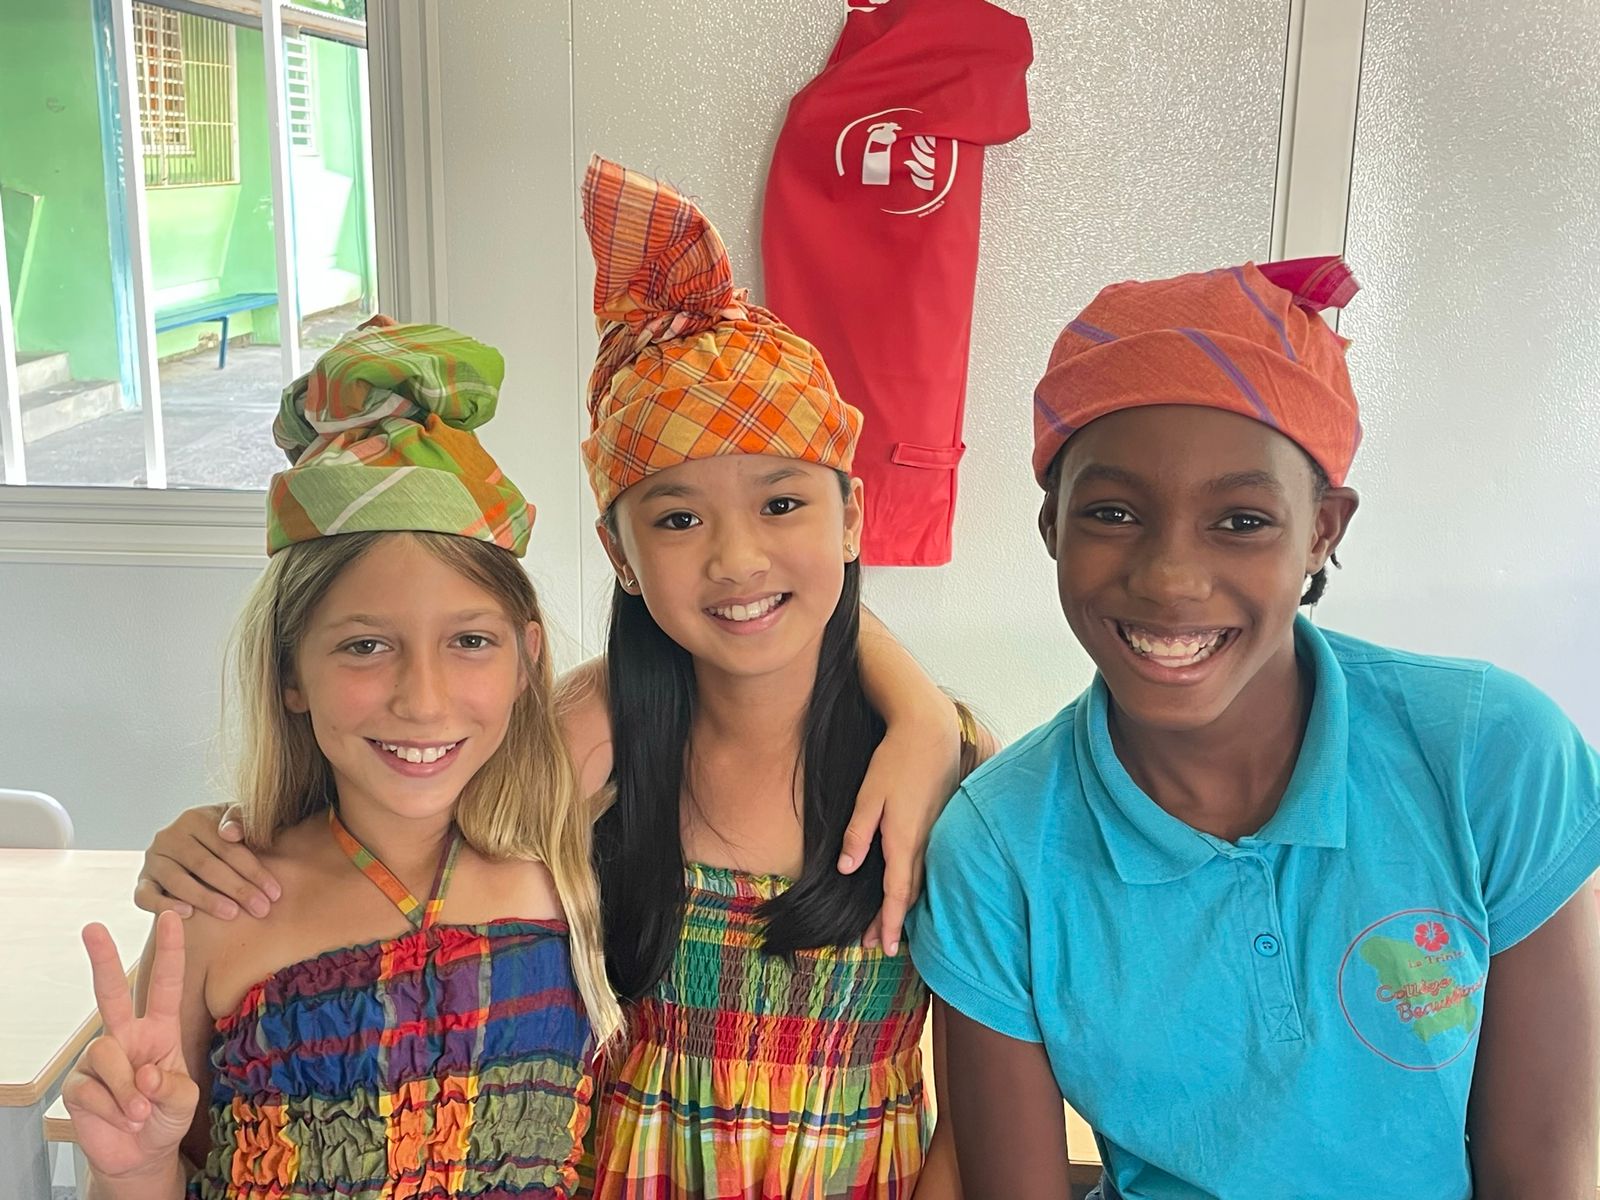 Les Martiniquais invités à s'habiller en tenue traditionnelle pendant 4  jours